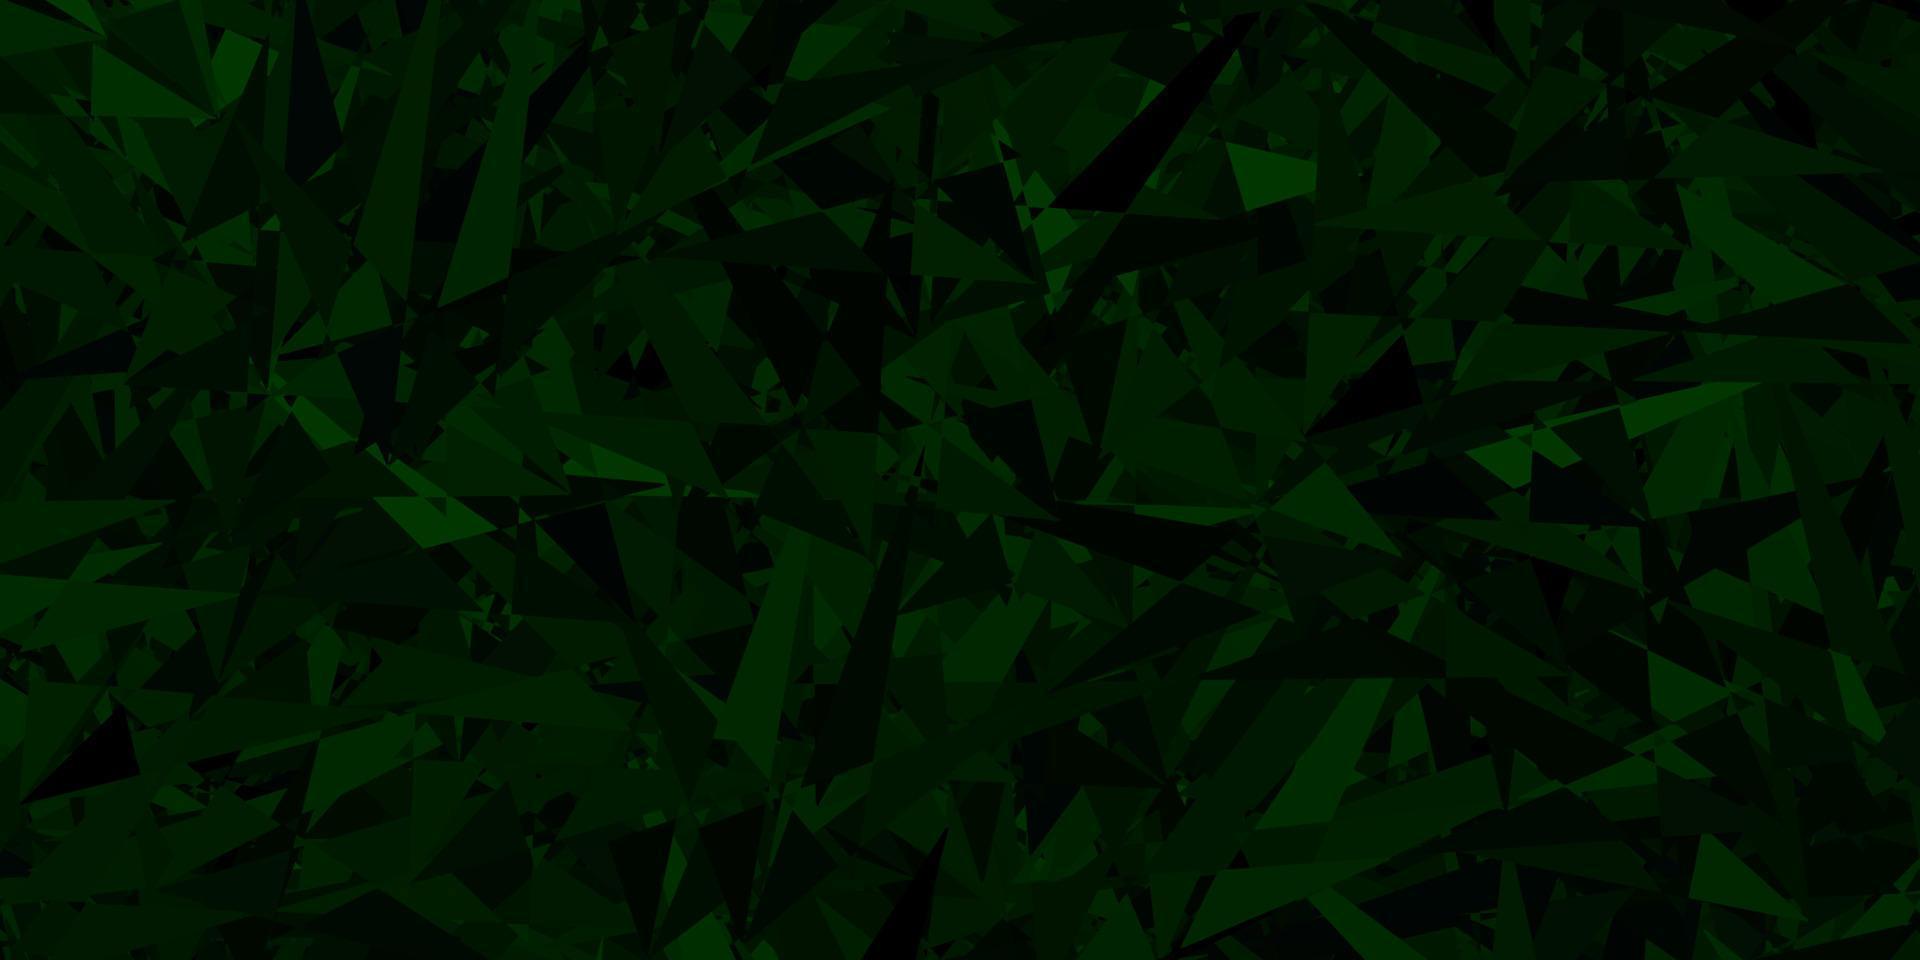 trama vettoriale verde scuro con stile triangolare.